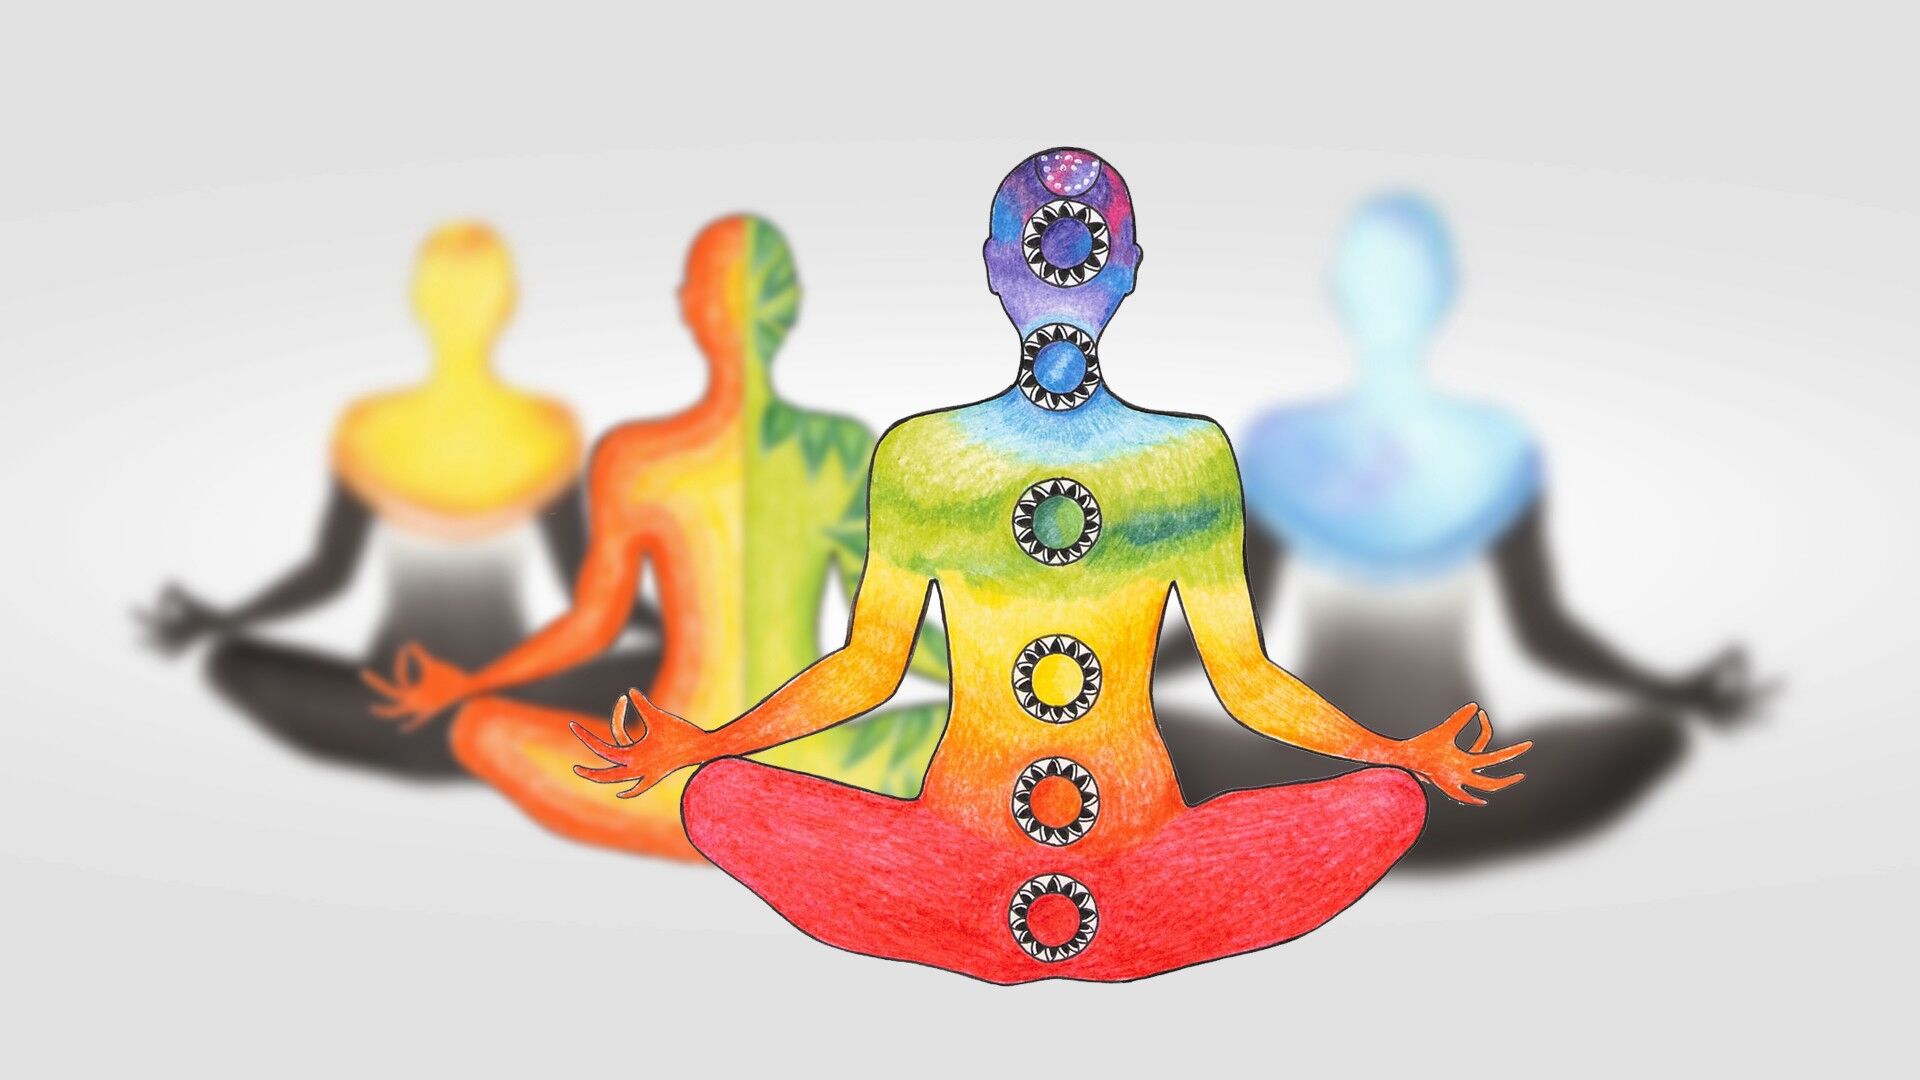 स्वस्थ जीवन के लिए जरुरी है योग :पूनम शर्मा